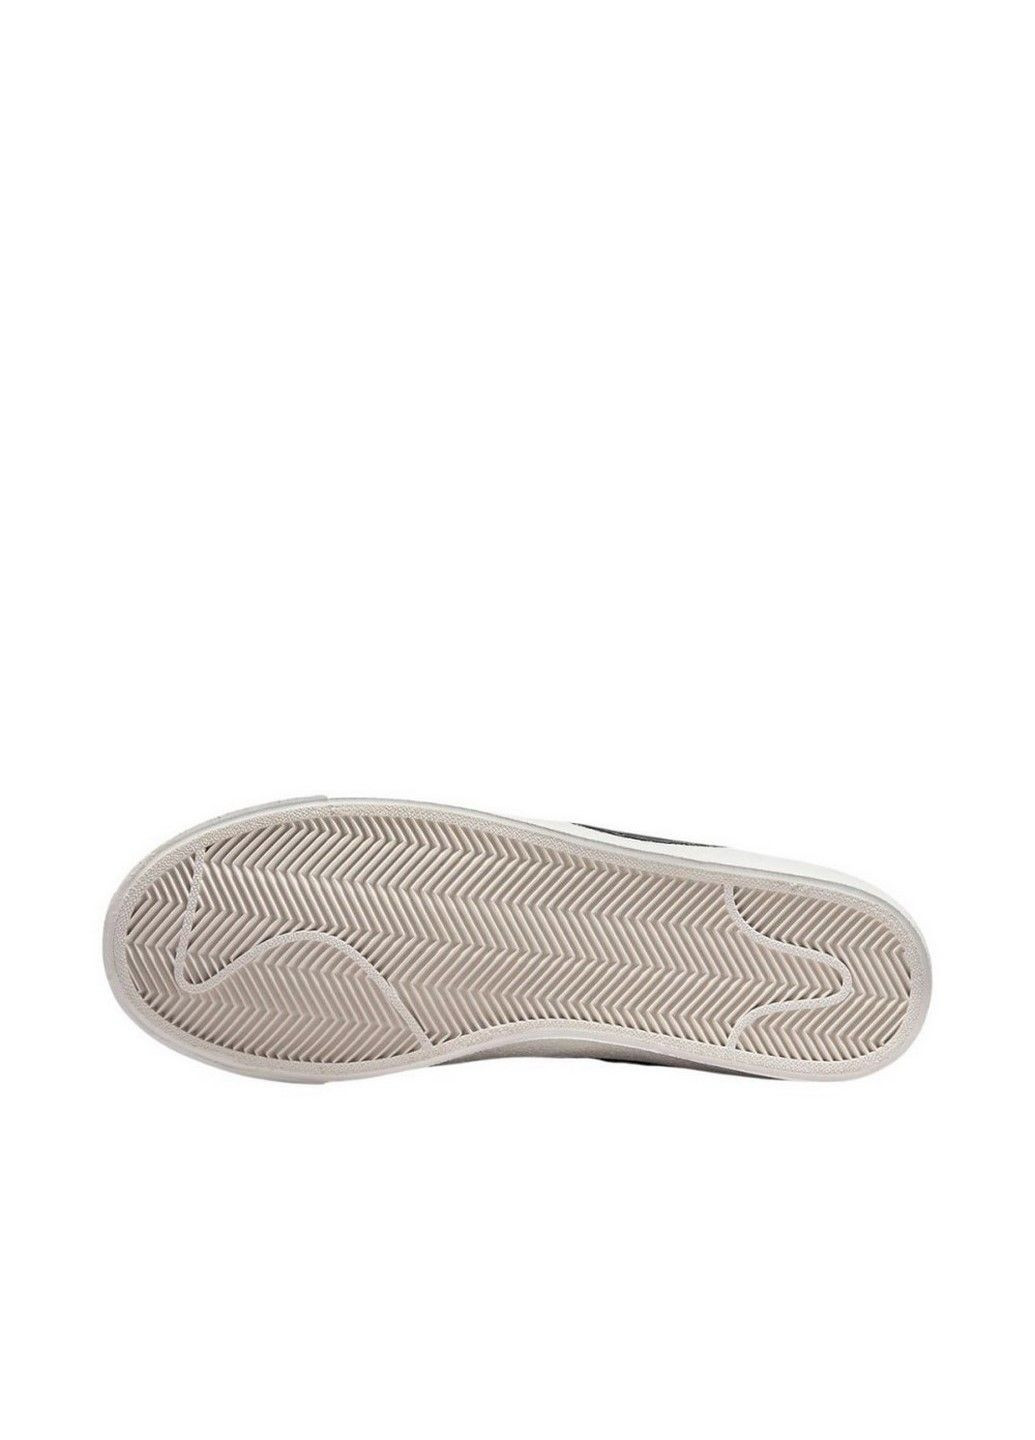 Белые демисезонные кроссовки w blazer low `77 jumbo dq1470-101 Nike